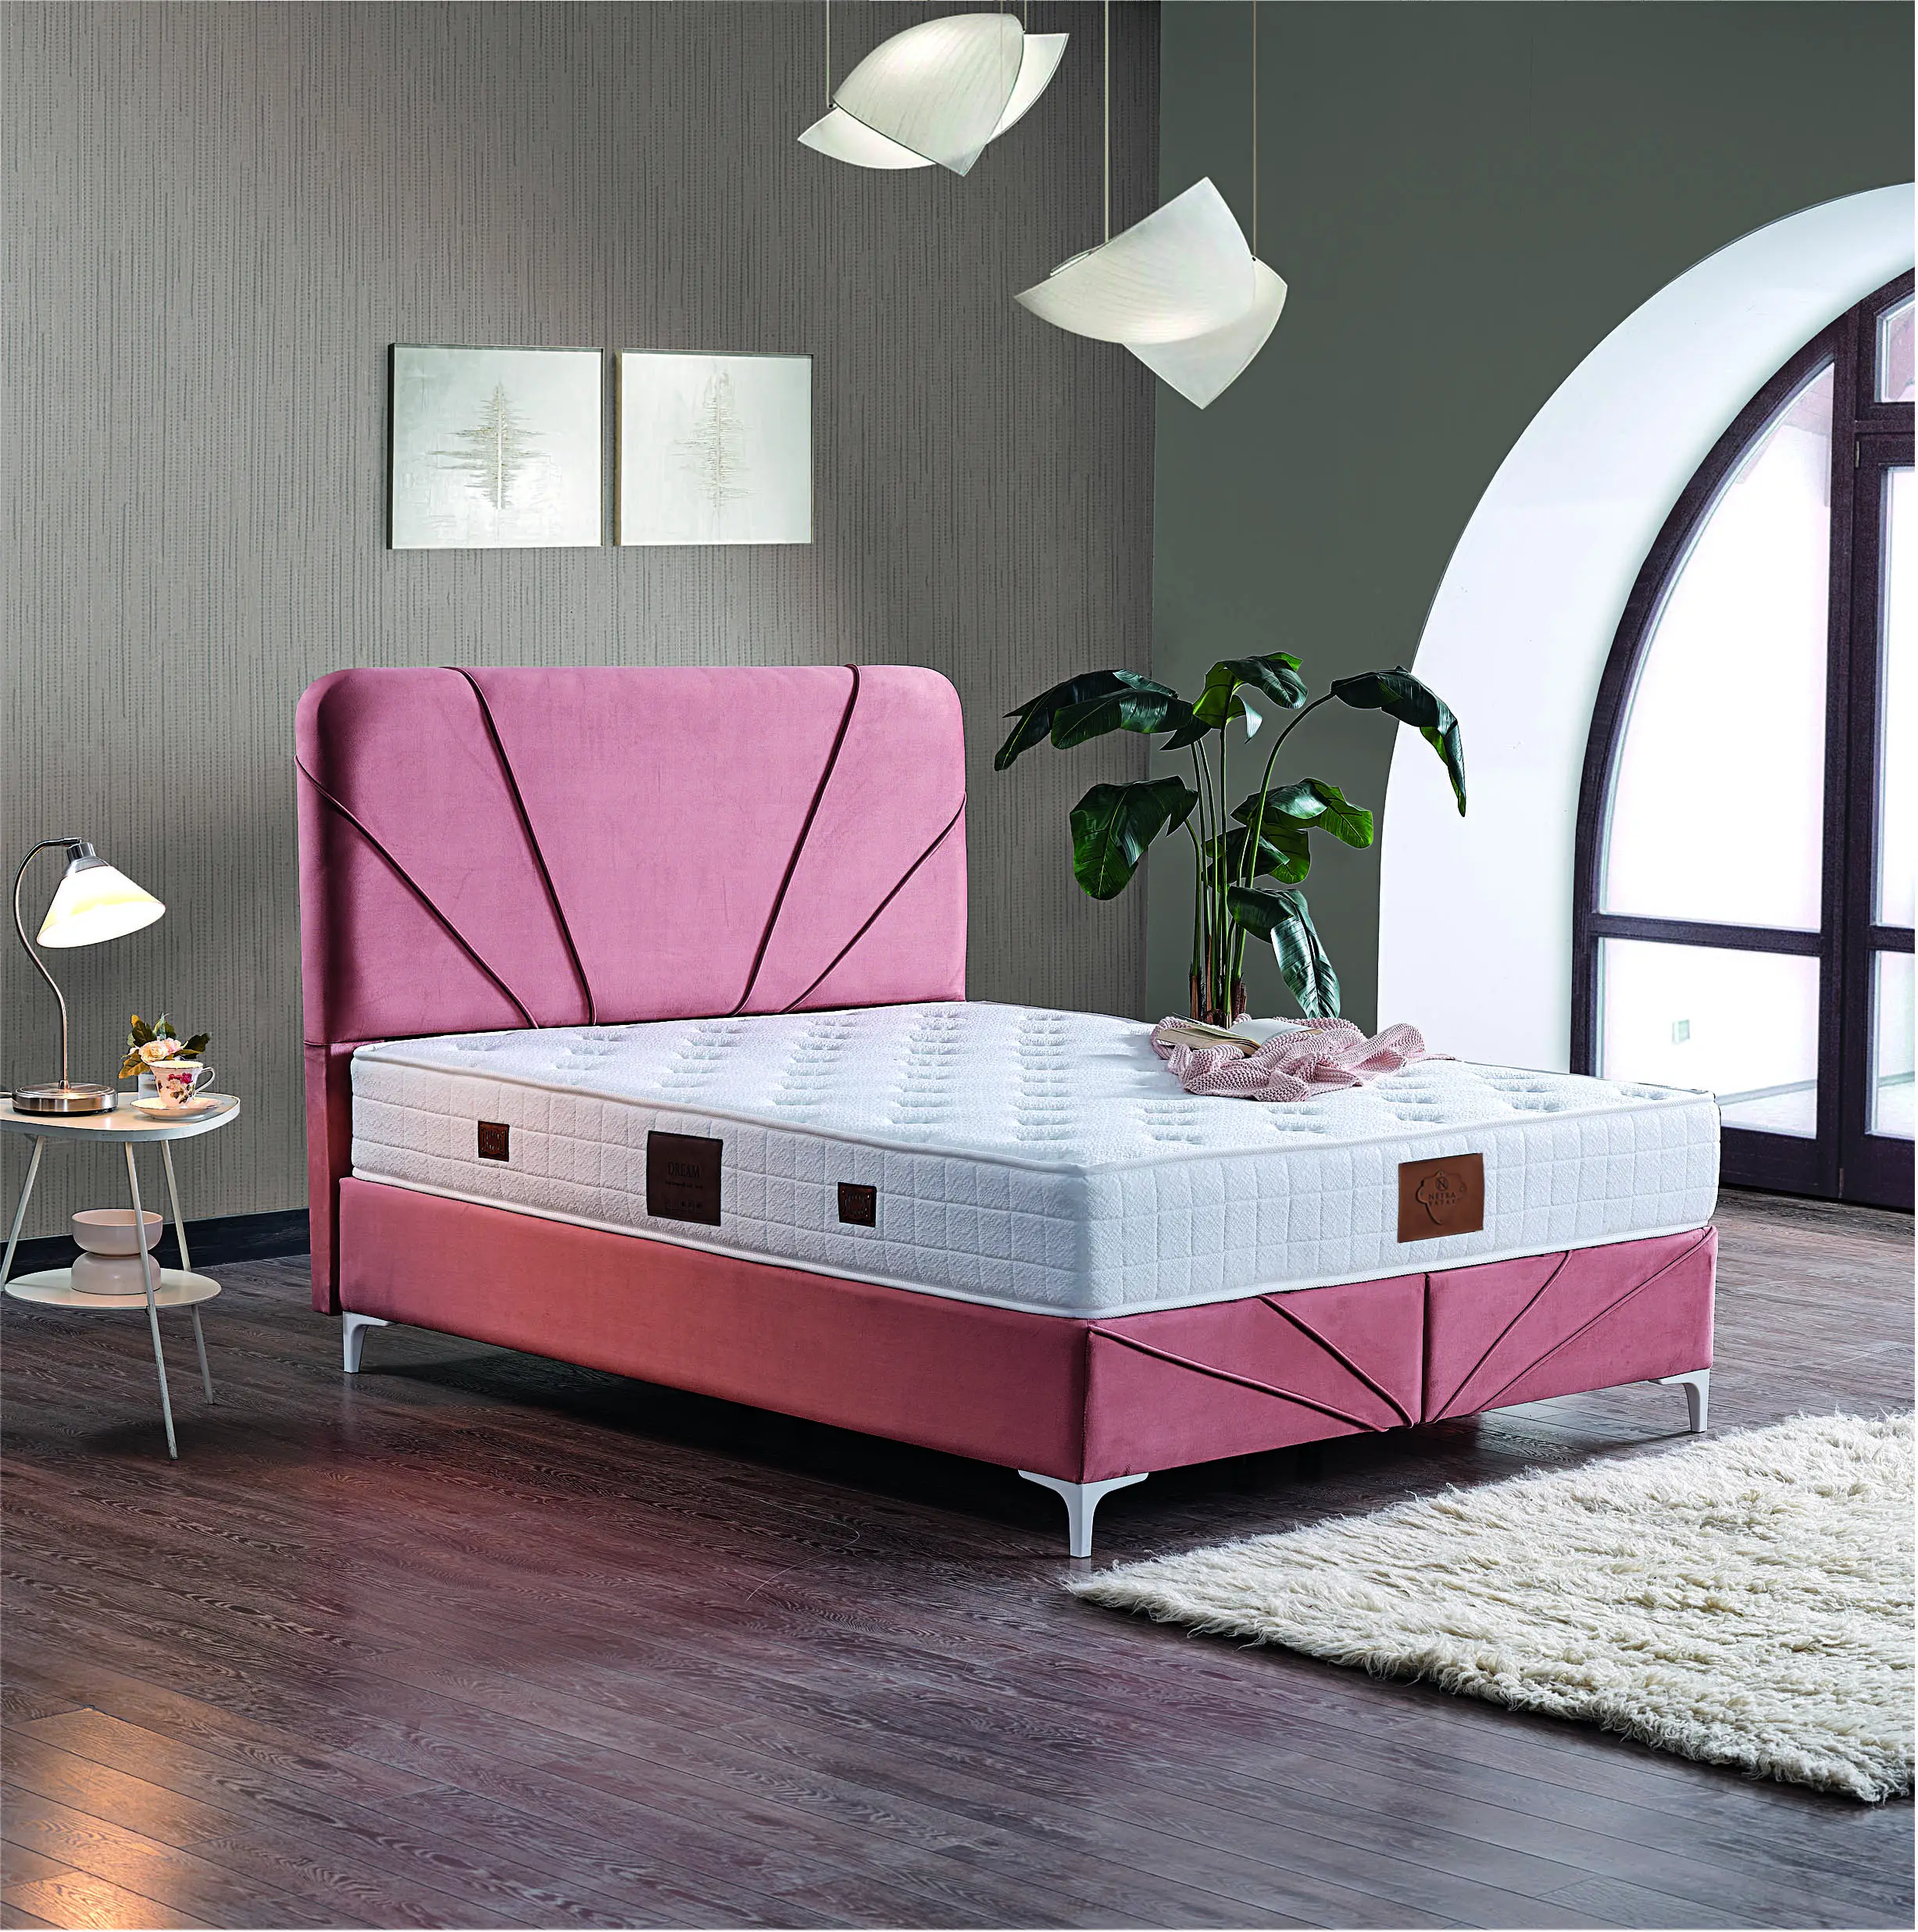 Les meubles Natra vous offrent les plus beaux types de meubles les plus beaux et les plus luxueux le lit de couchage avec le baza